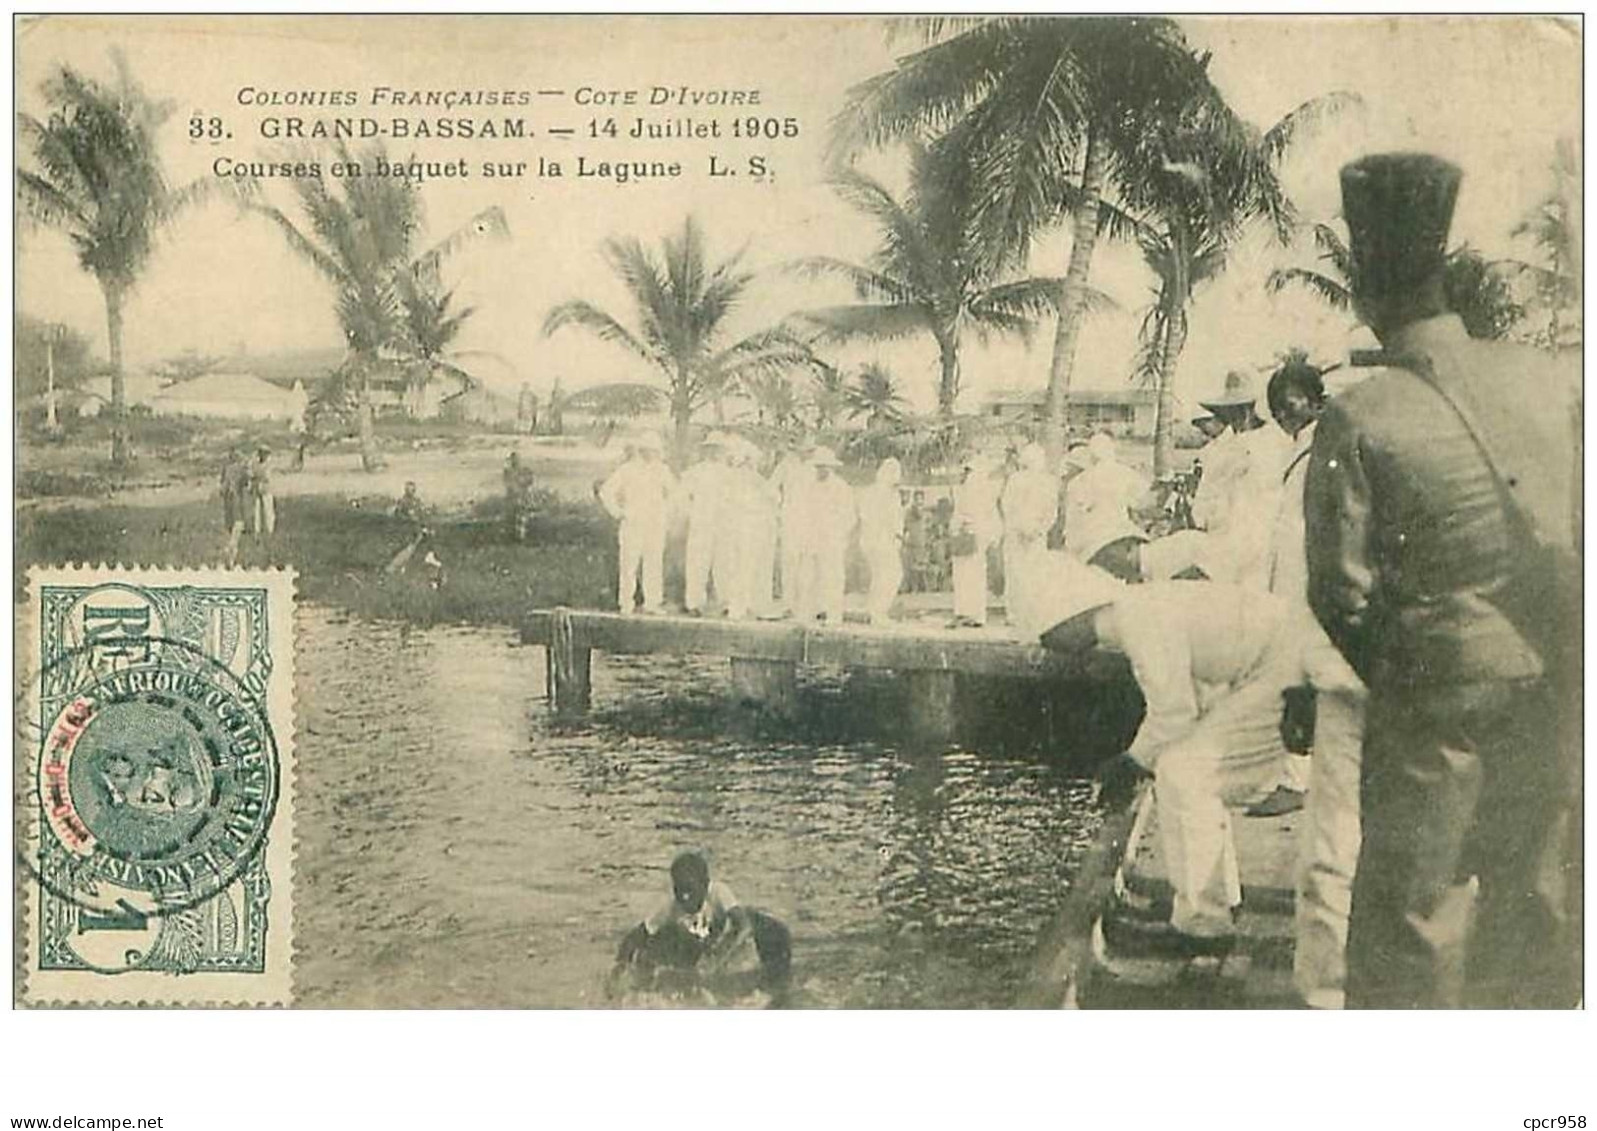 COTE D'IVOIRE.n°31154.GRAND BASSAM.14 JUILLET 1905.COURSES EN BAQUET SUR LA LAGUNE - Ivory Coast